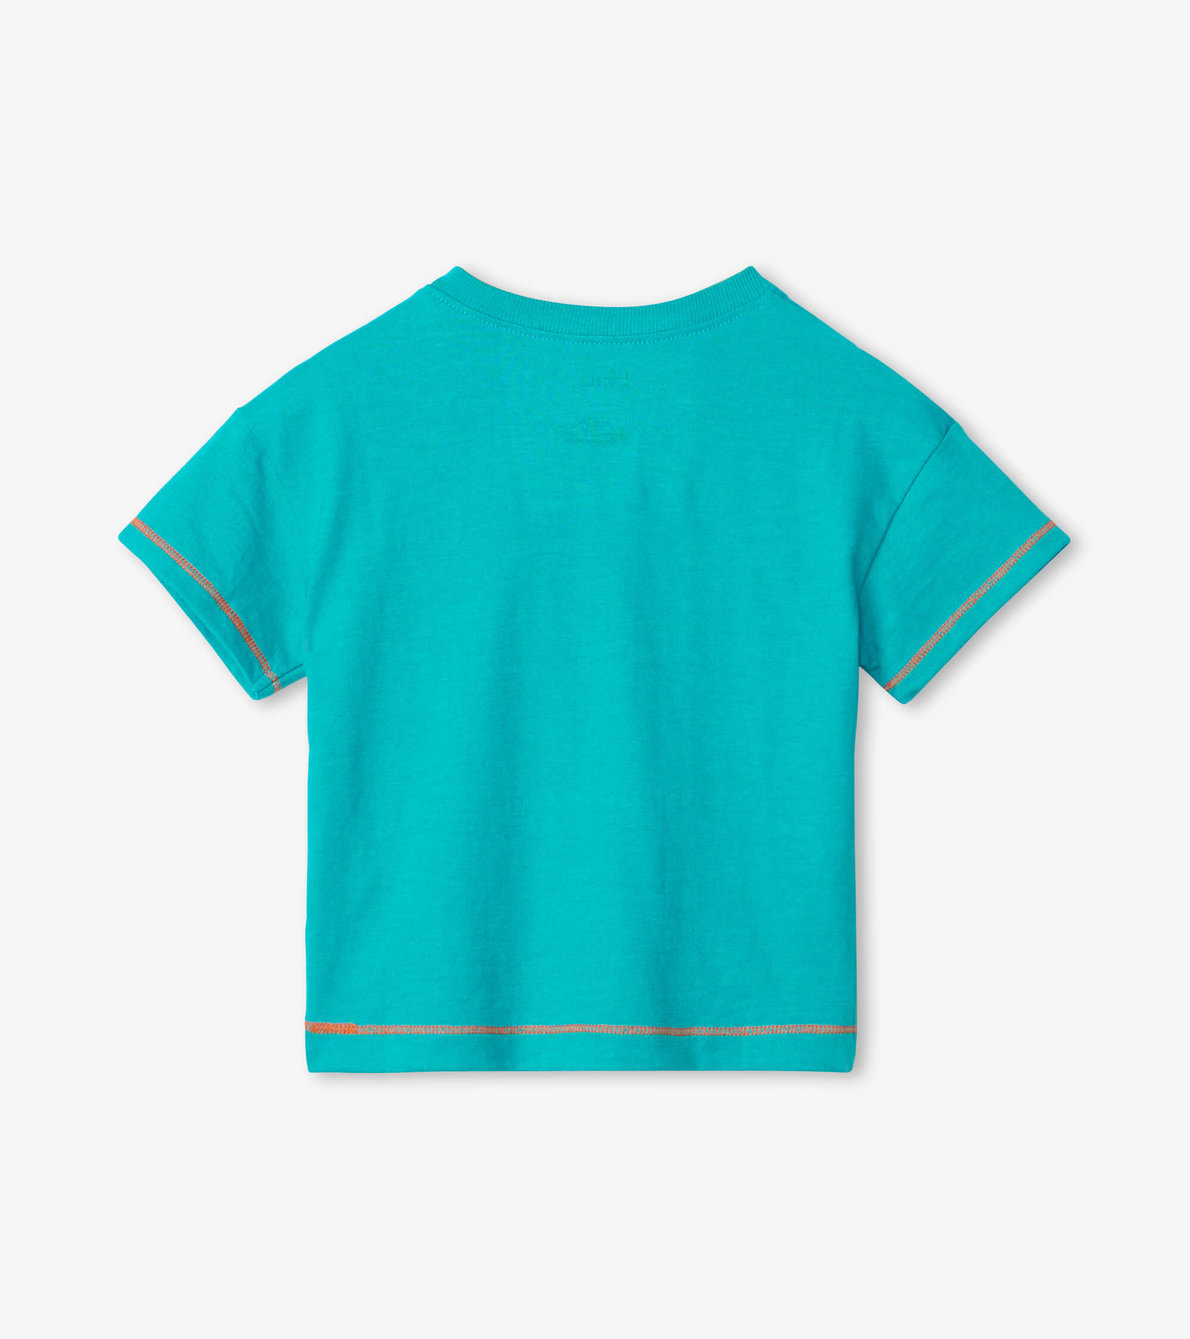 Agrandir l'image de T-shirt à imprimé pour bébé – Petit poisson « Shark Bait »